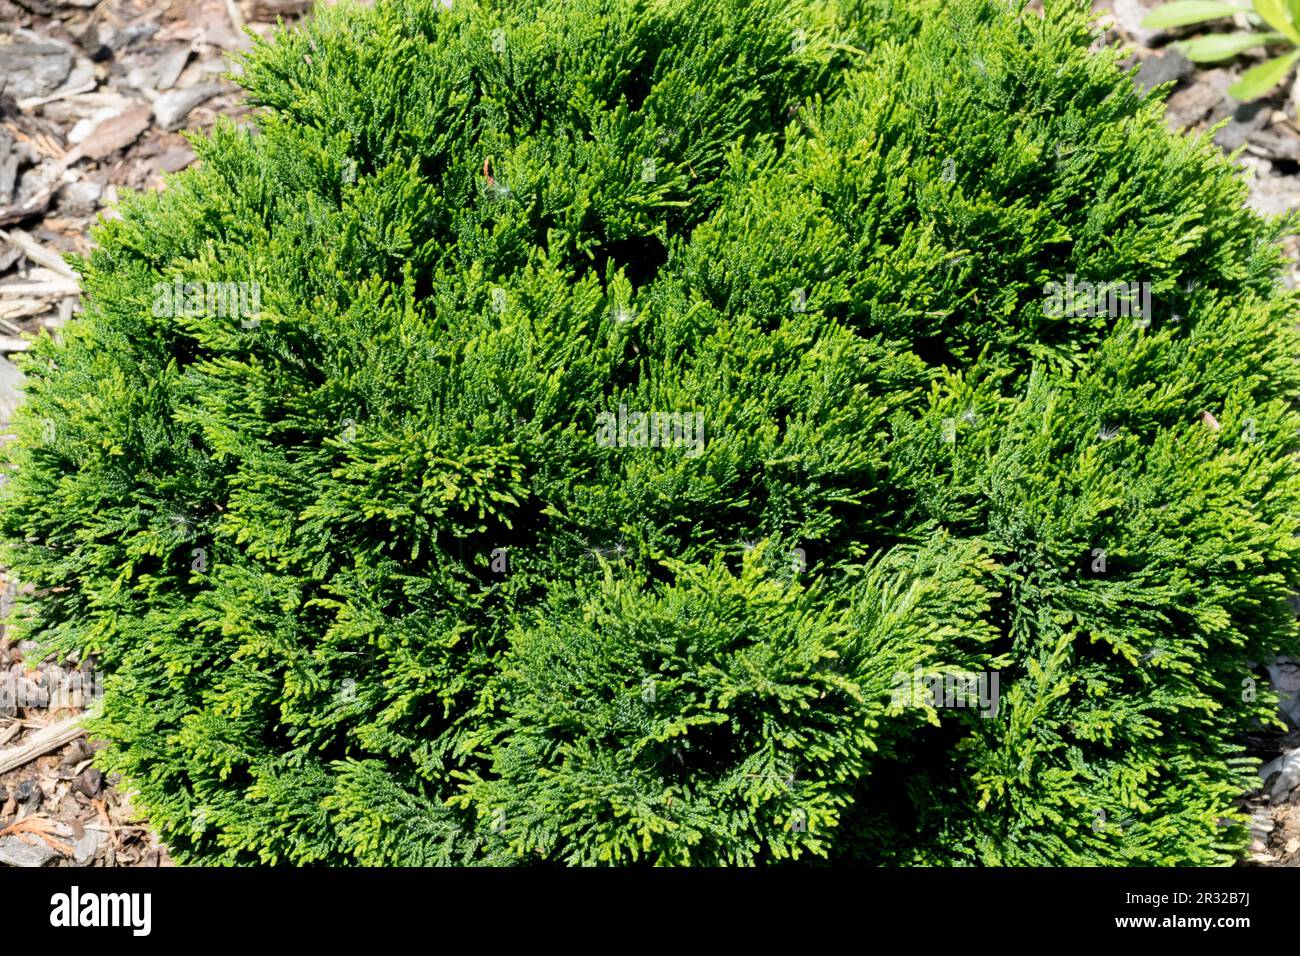 Japanese Cypress, Hinoki Cypress "Densa", Chamaecyparis obtusa "Densa" Stock Photo